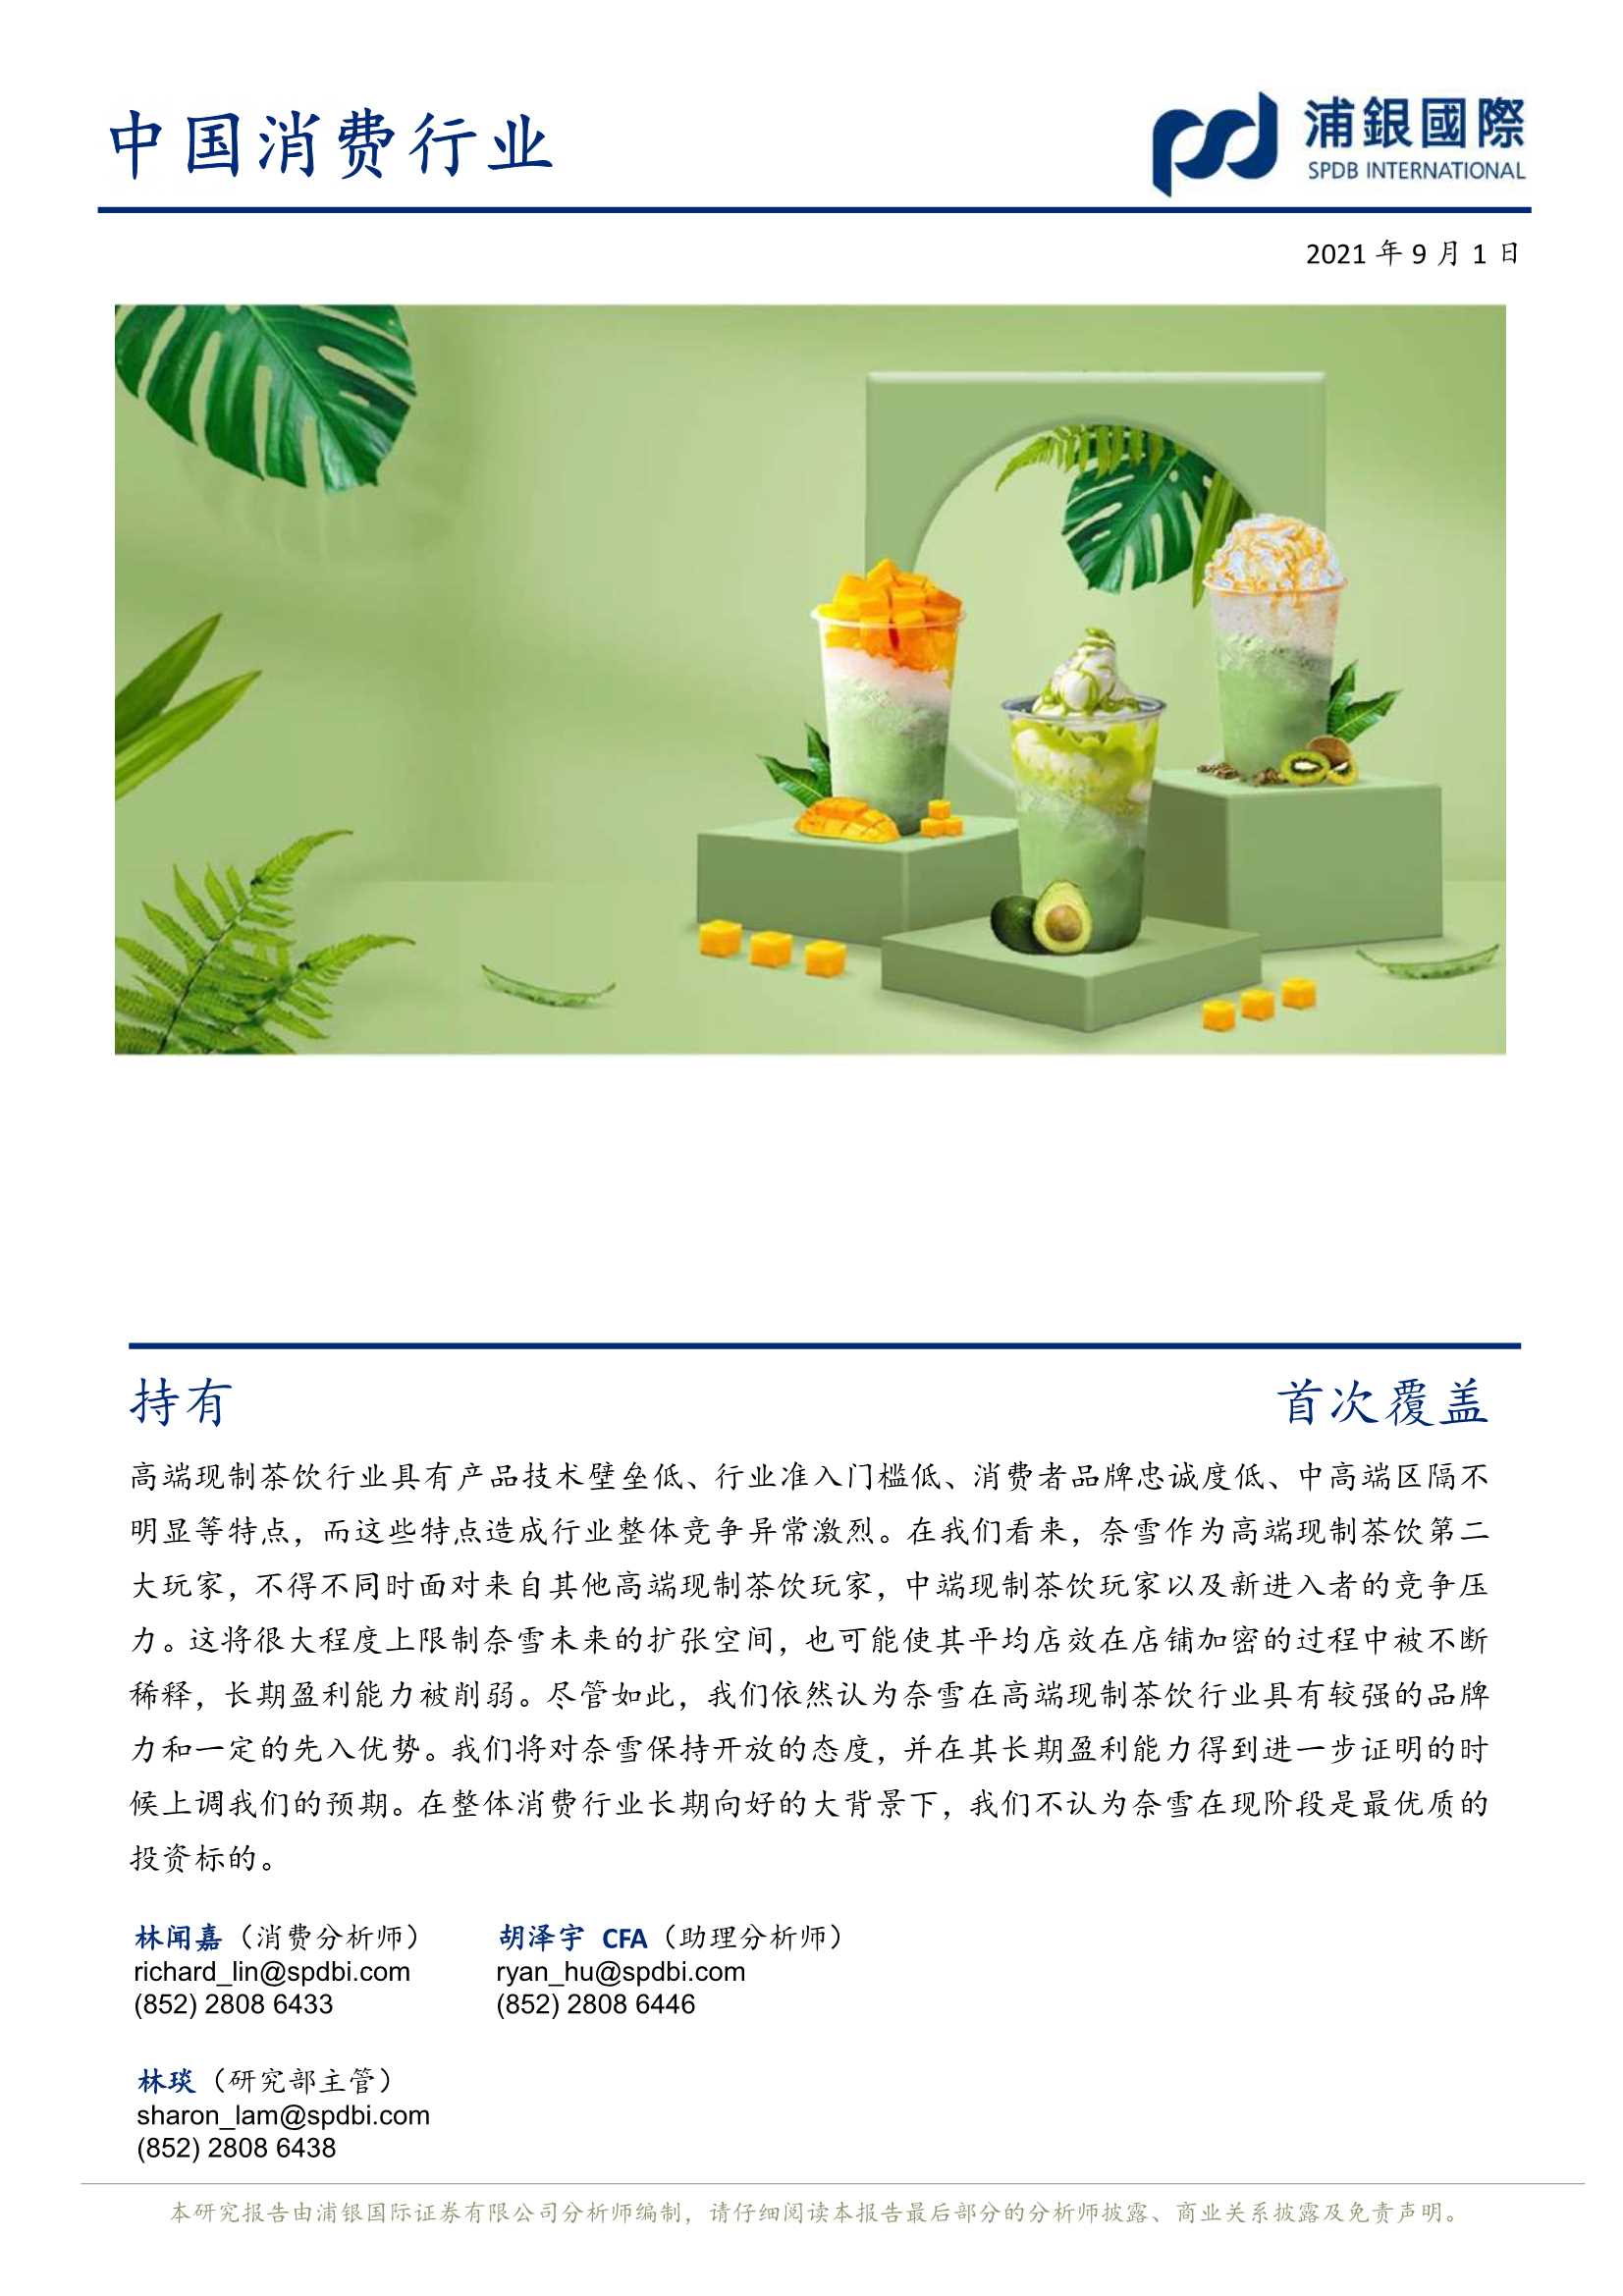 浦银国际-奈雪的茶-2150.HK-行业竞争带来较大盈利不确性-20210901-60页